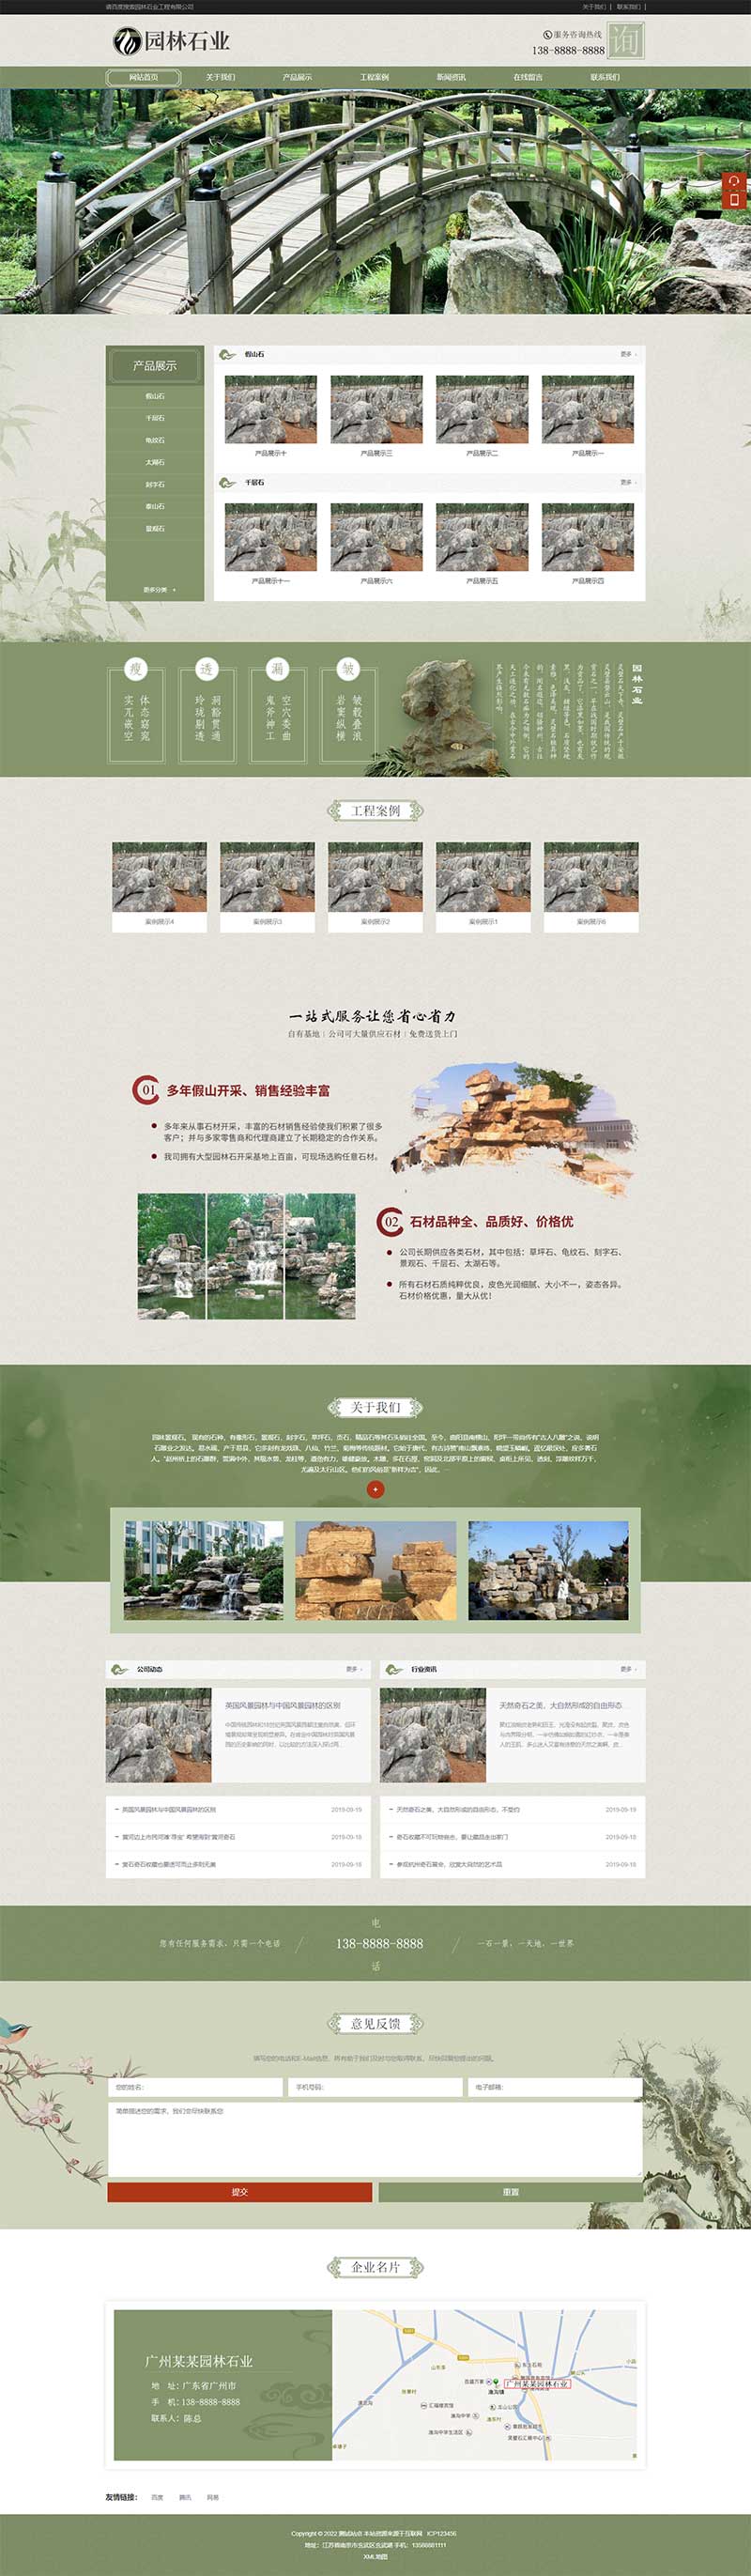 中国风古典园林石业园林景观假山网站WordPress模板主题演示图